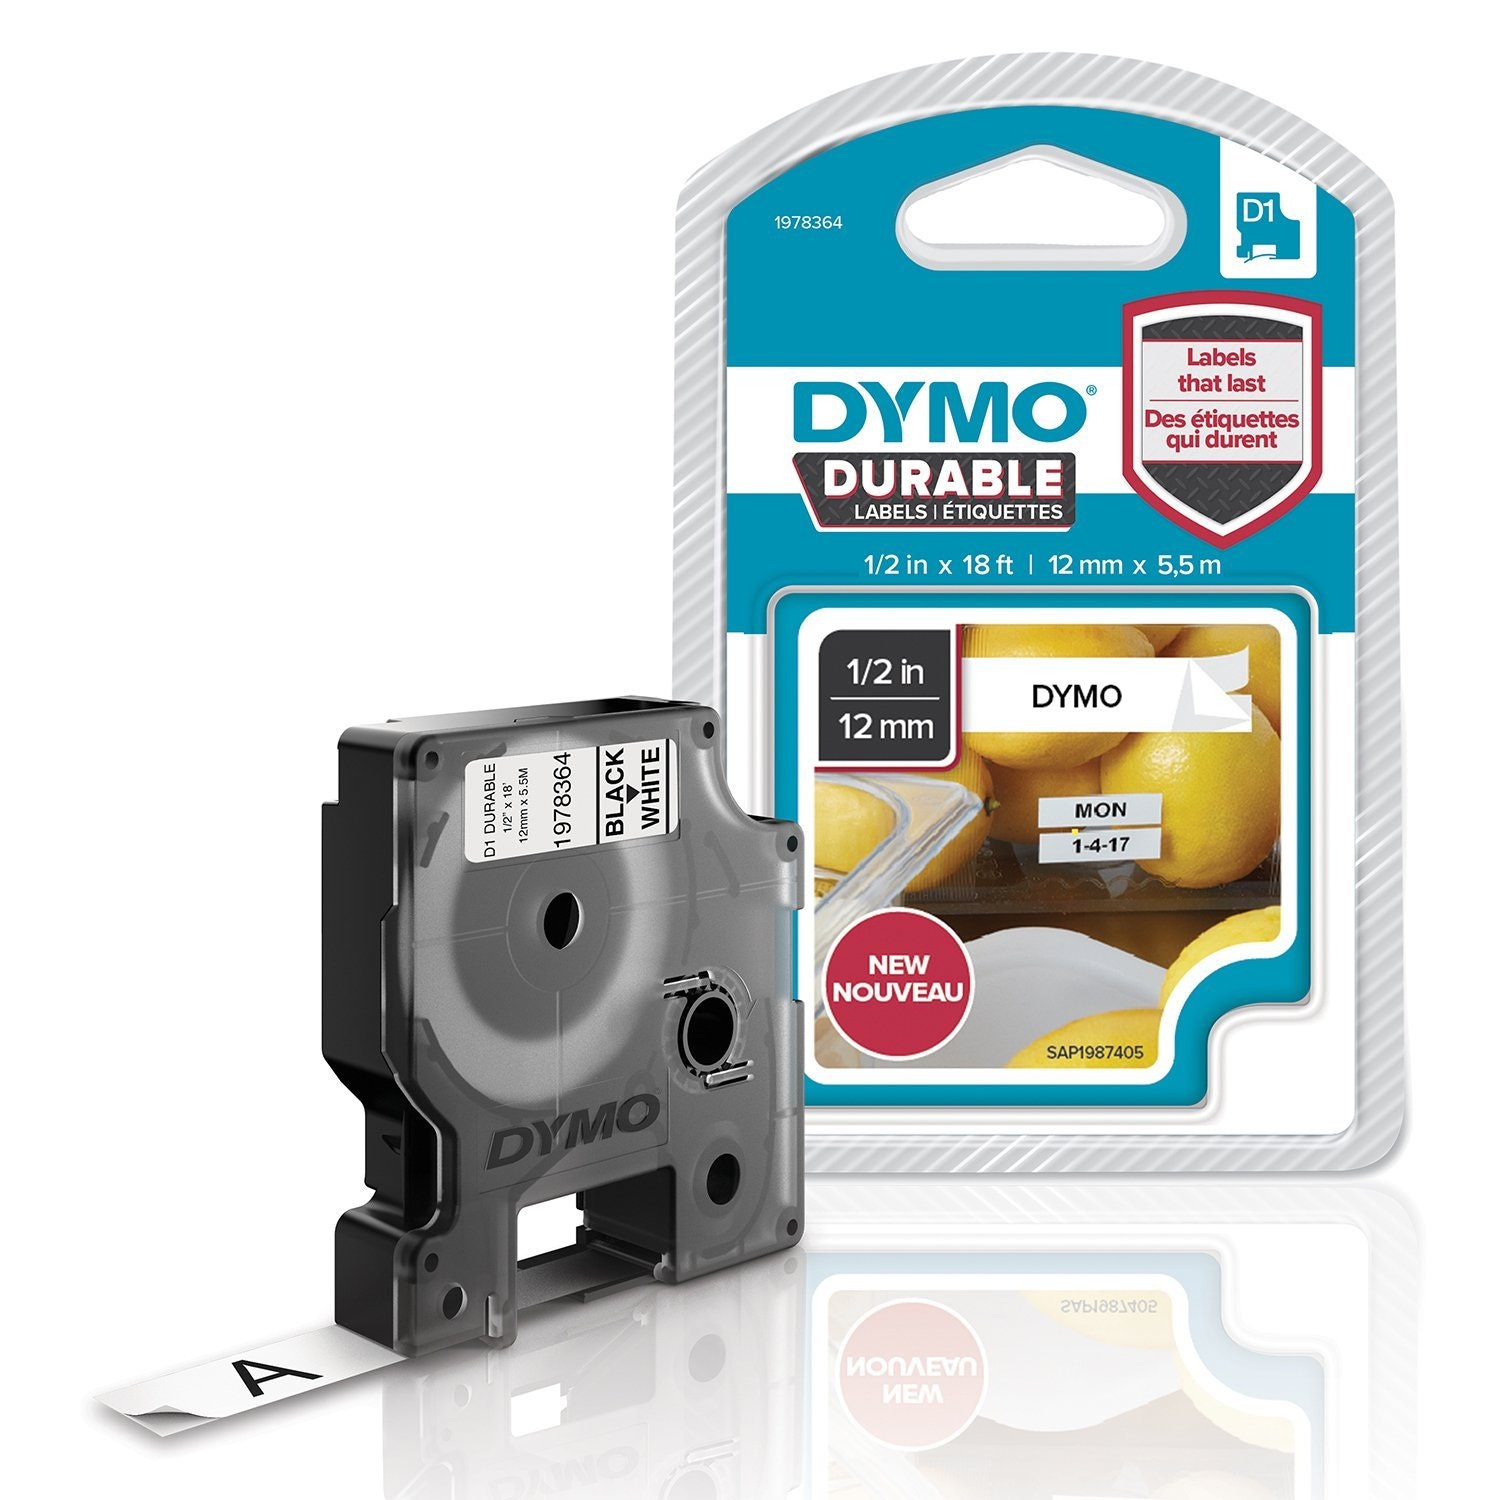 Dymo D1 Cinta de etiquetado resistente para labelmanager rotuladoras con en negro y fondo blanco 12 ancho x 55 largo 1978364 12mmx55m 12mm 5.5m